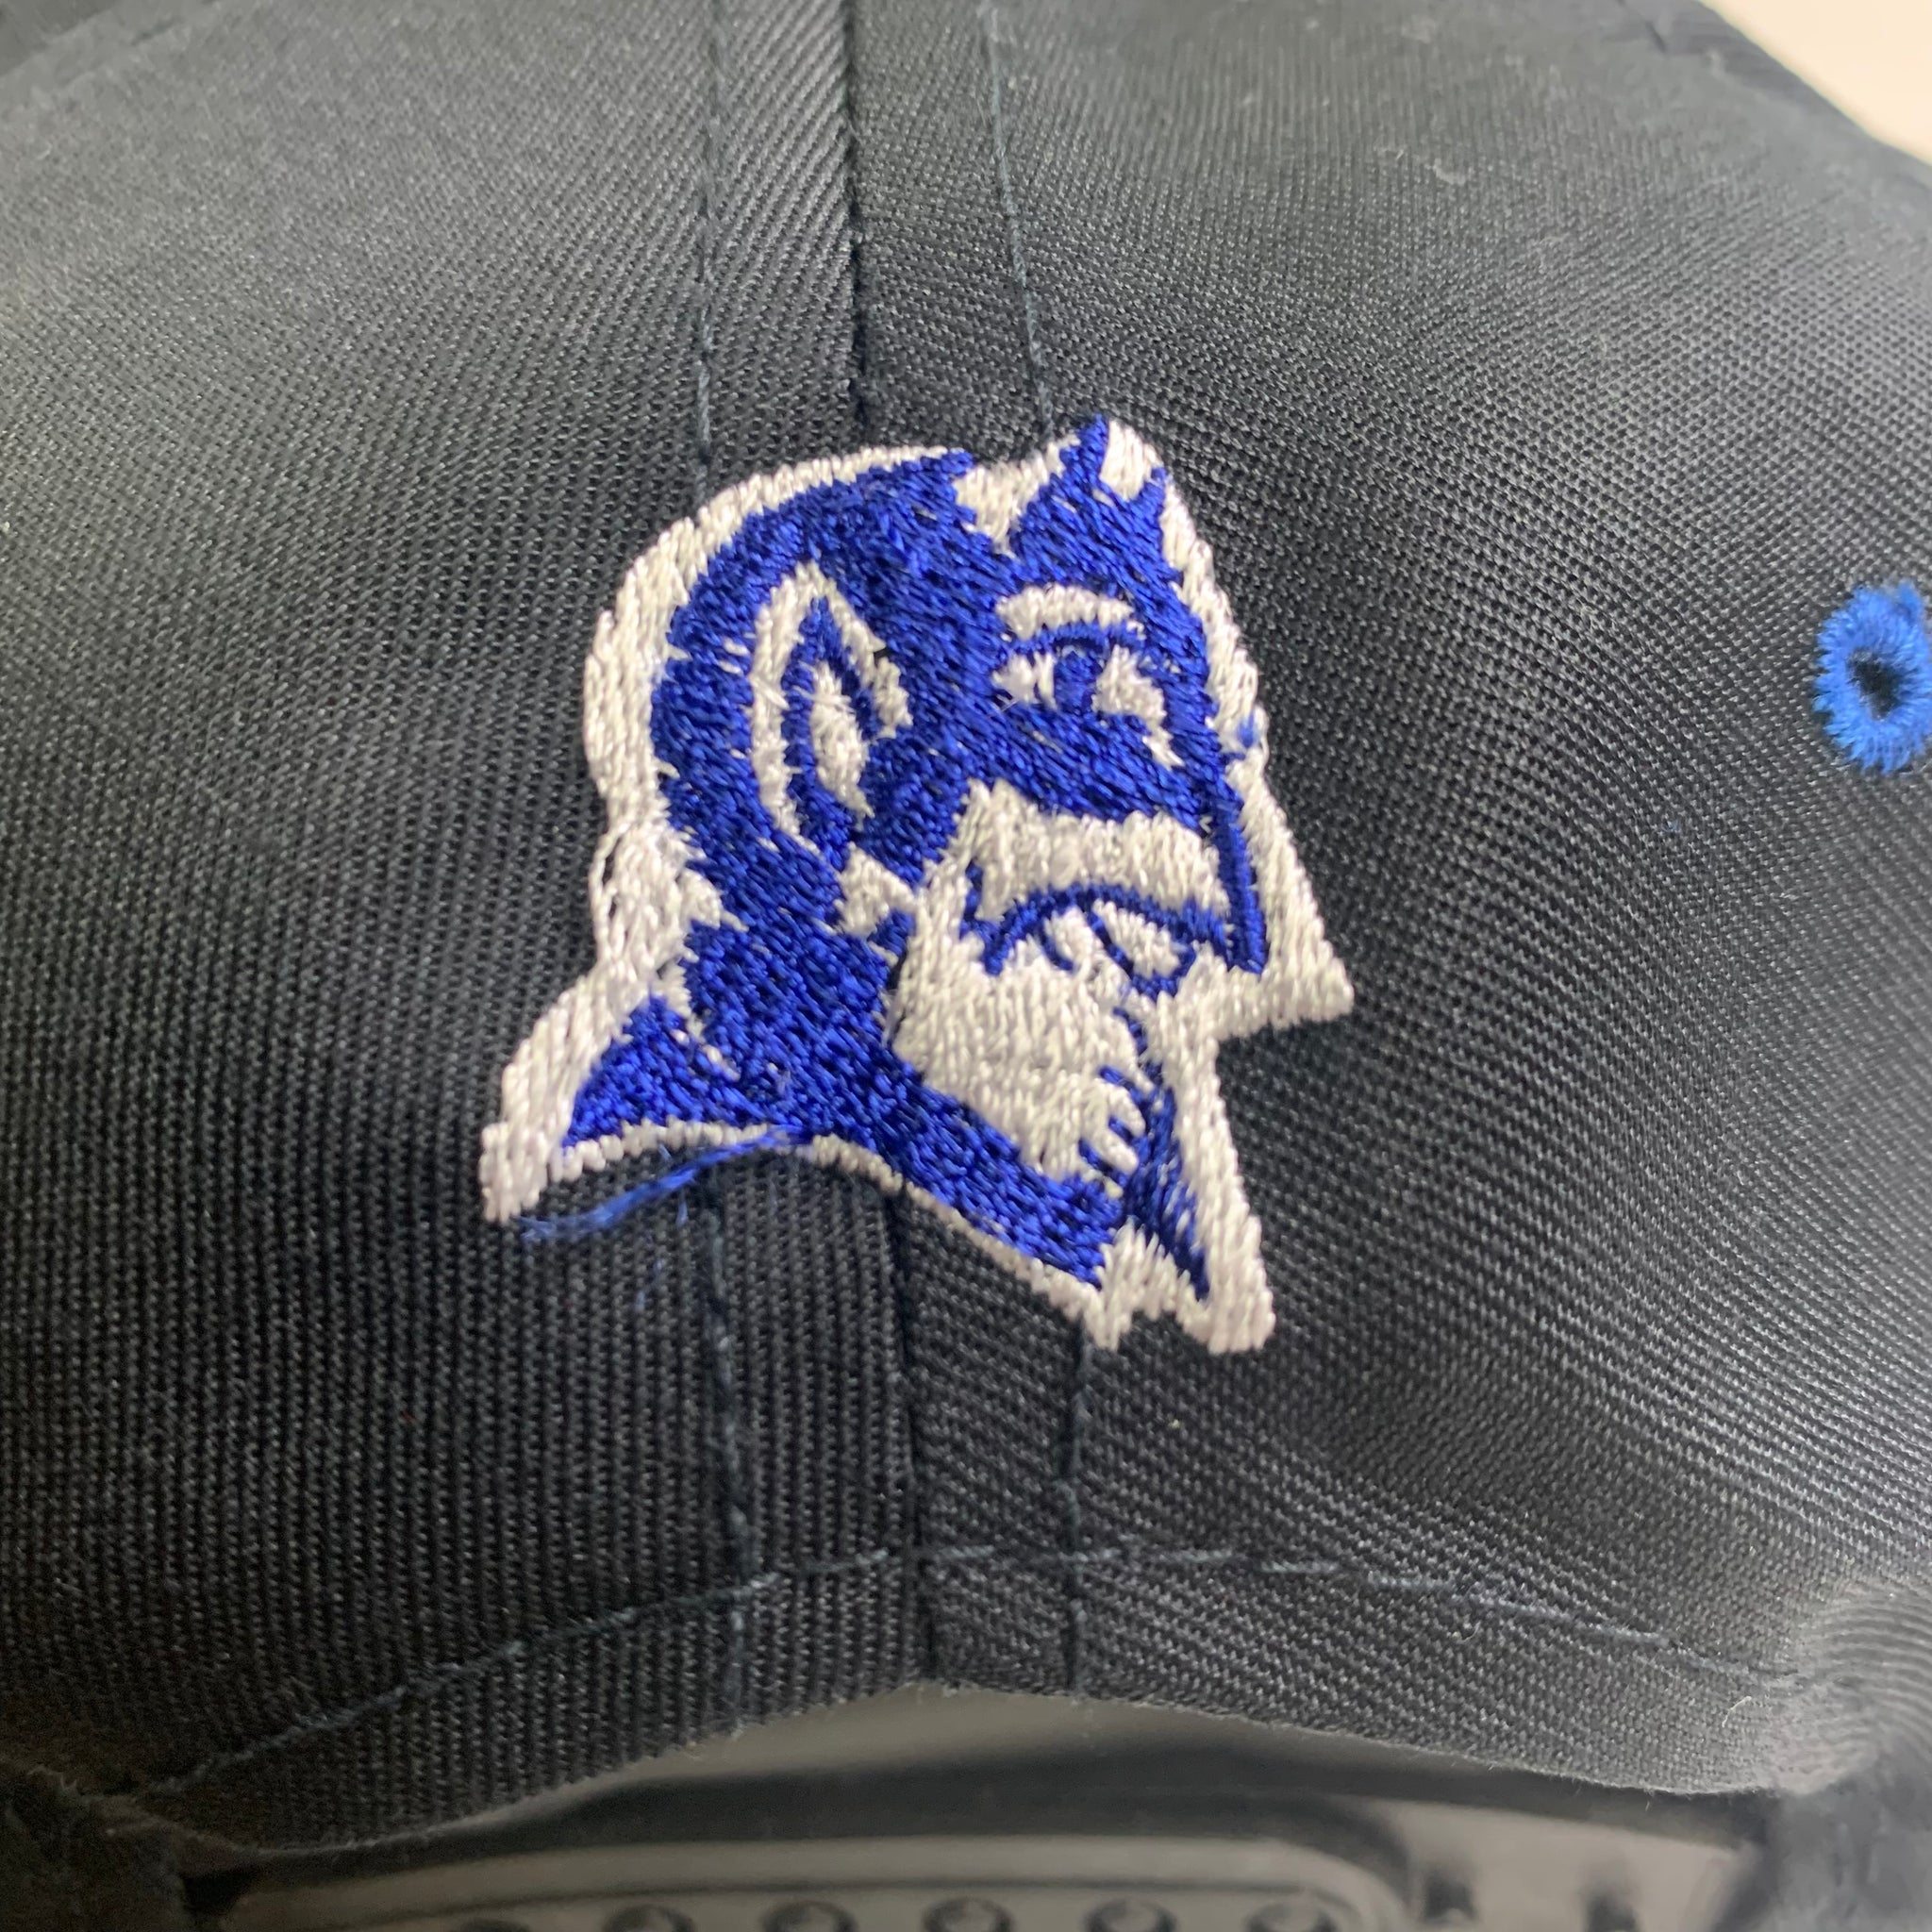 Duke Blue Devils Vintage 90s Snapback Hat Black and Blue College Unive